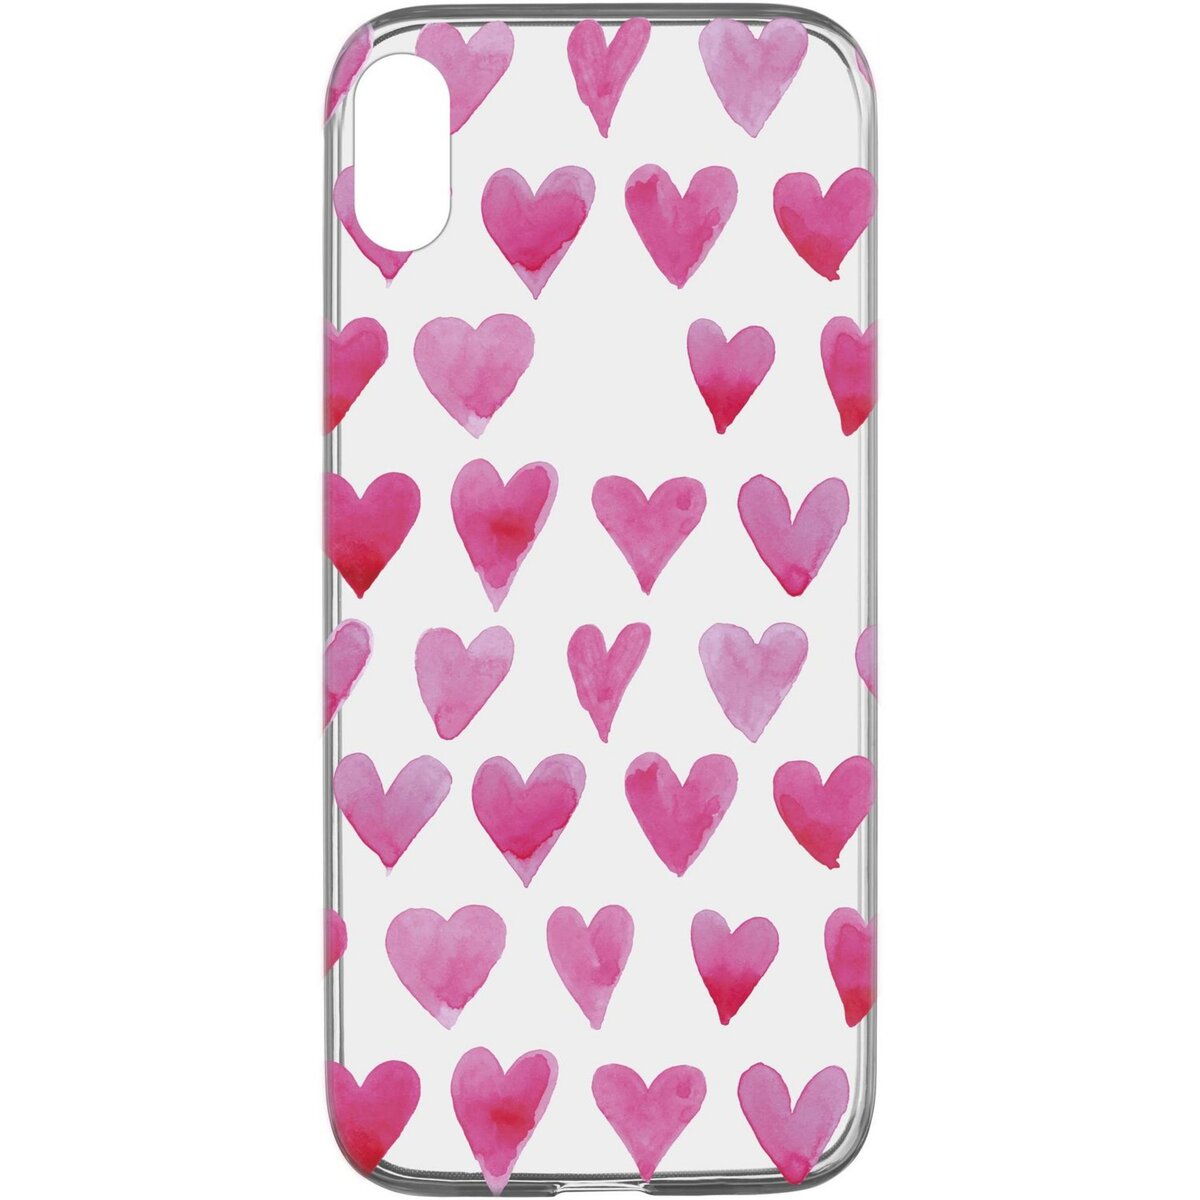 CELLULARLINE Coque de protection pour iPhone XR Transparent et rose Coeur